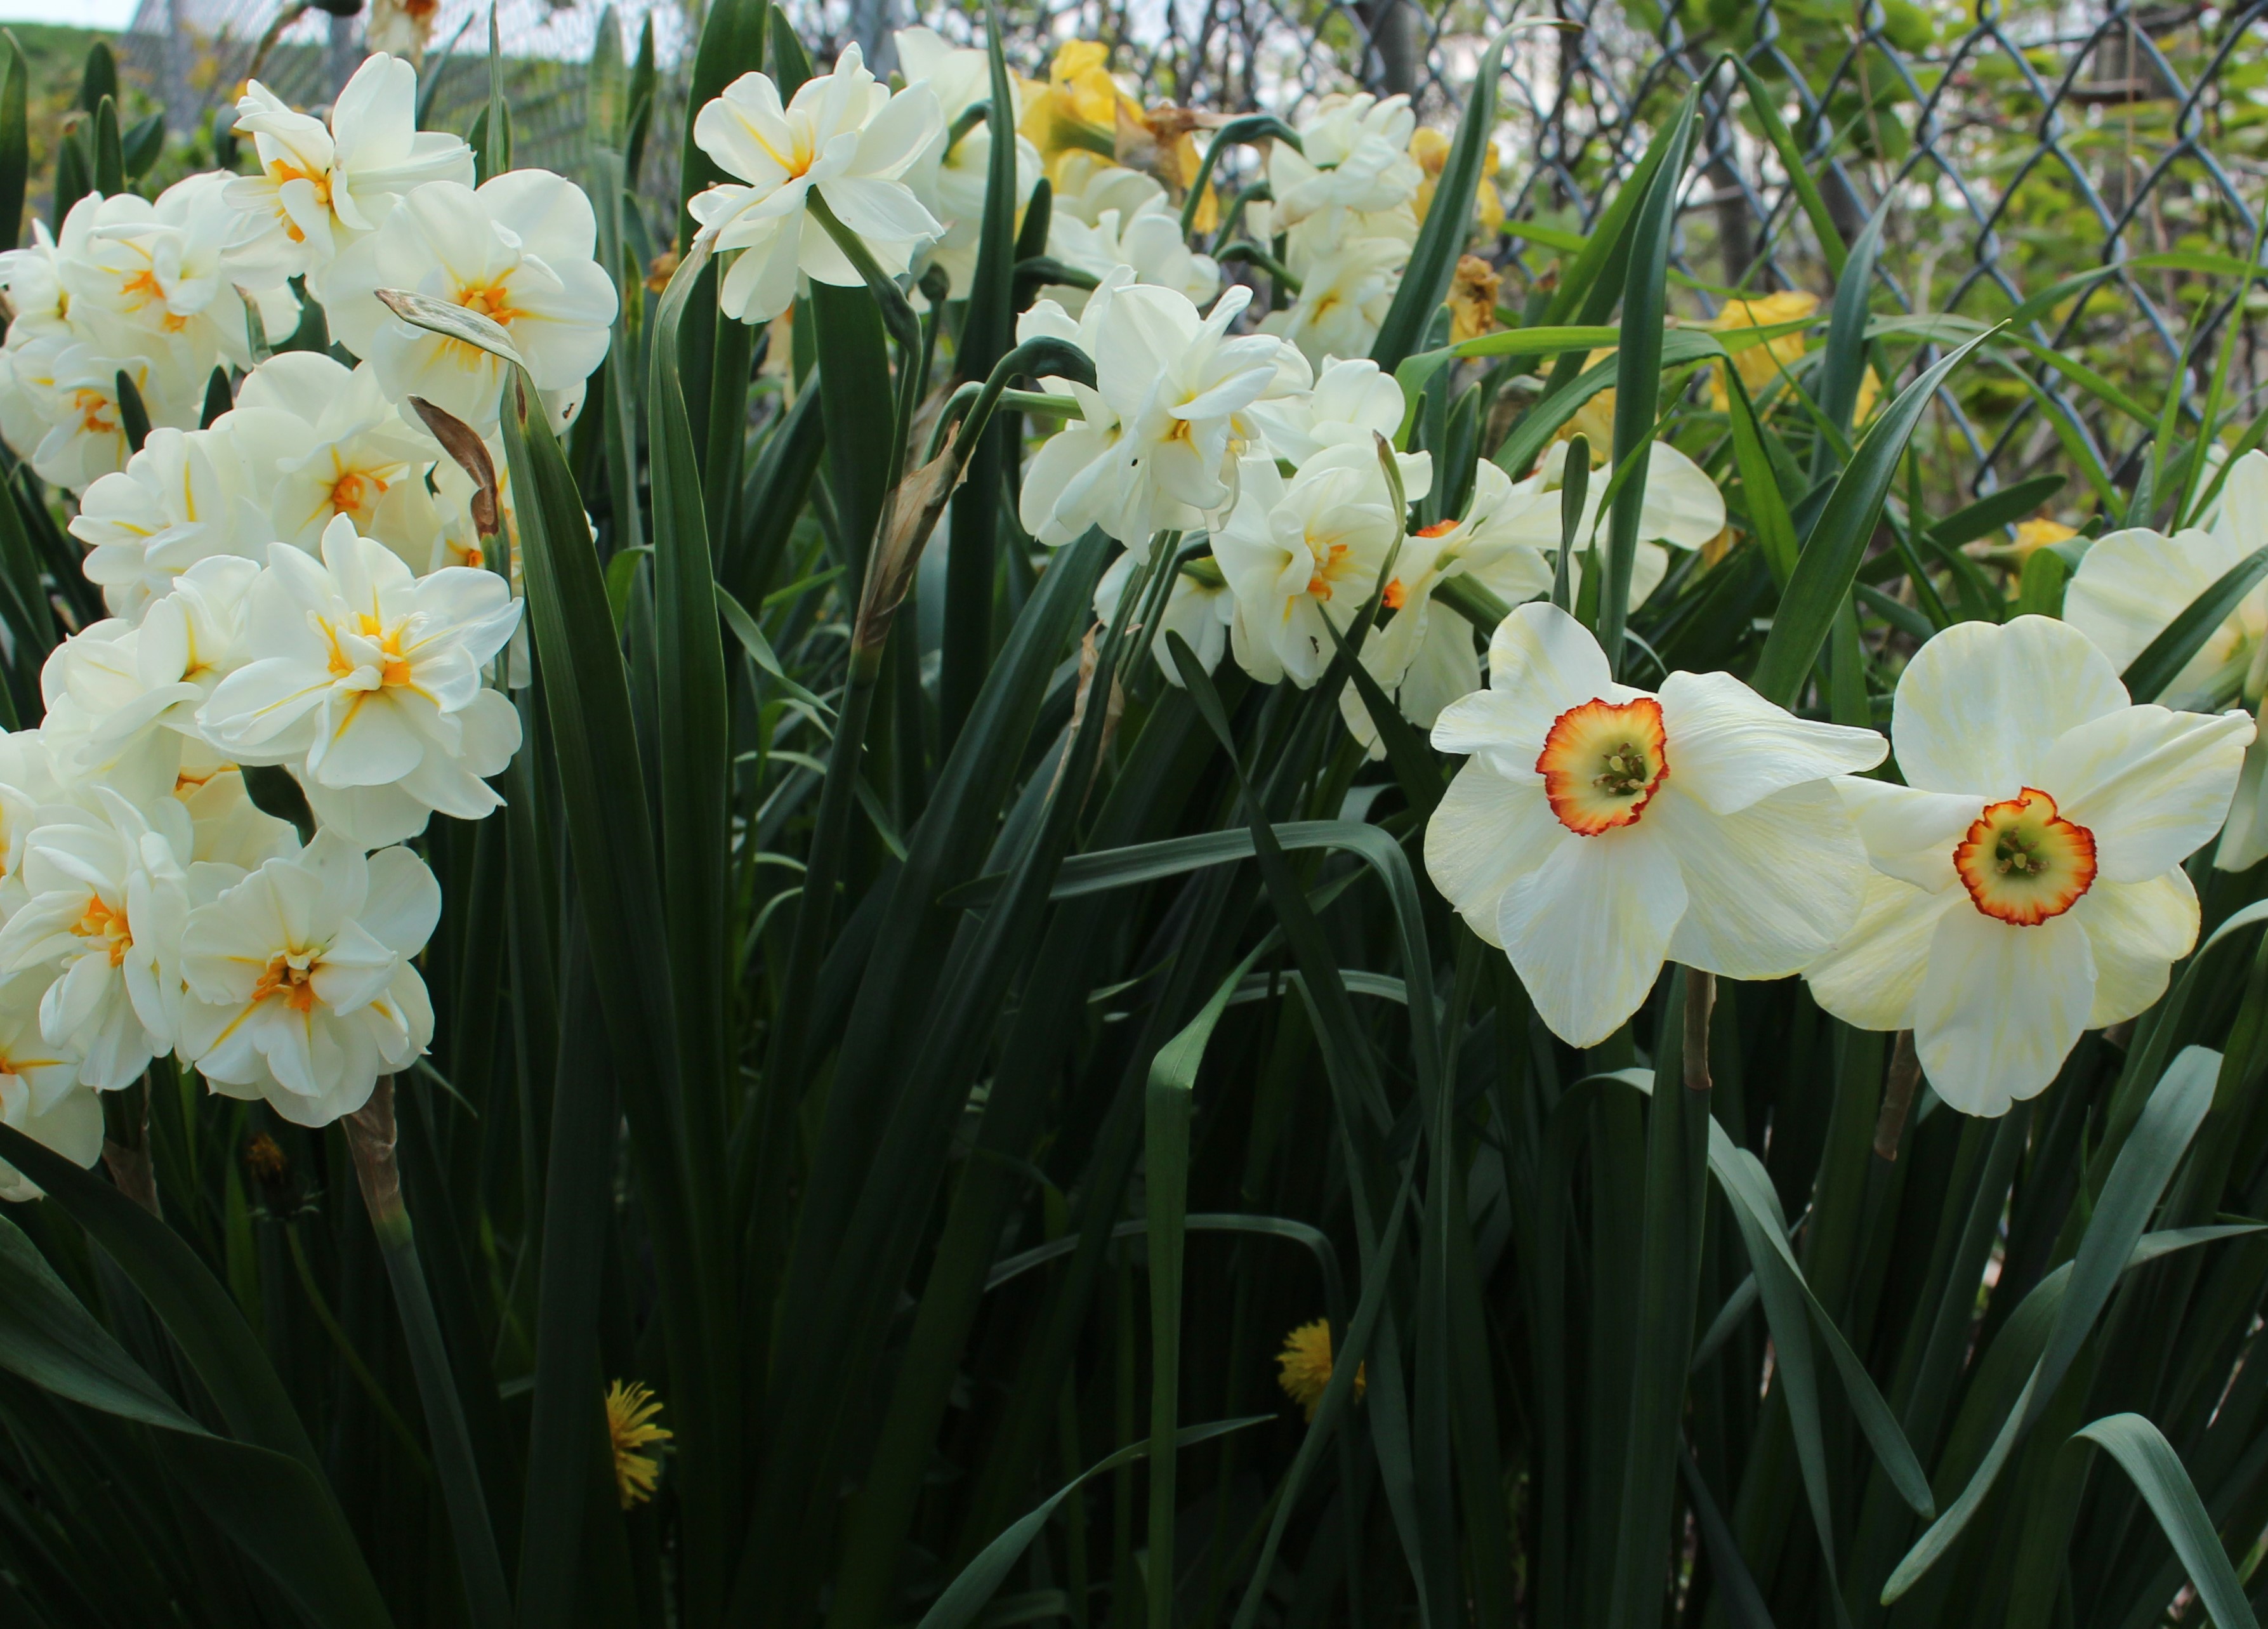 daffodils « sorta like suburbia